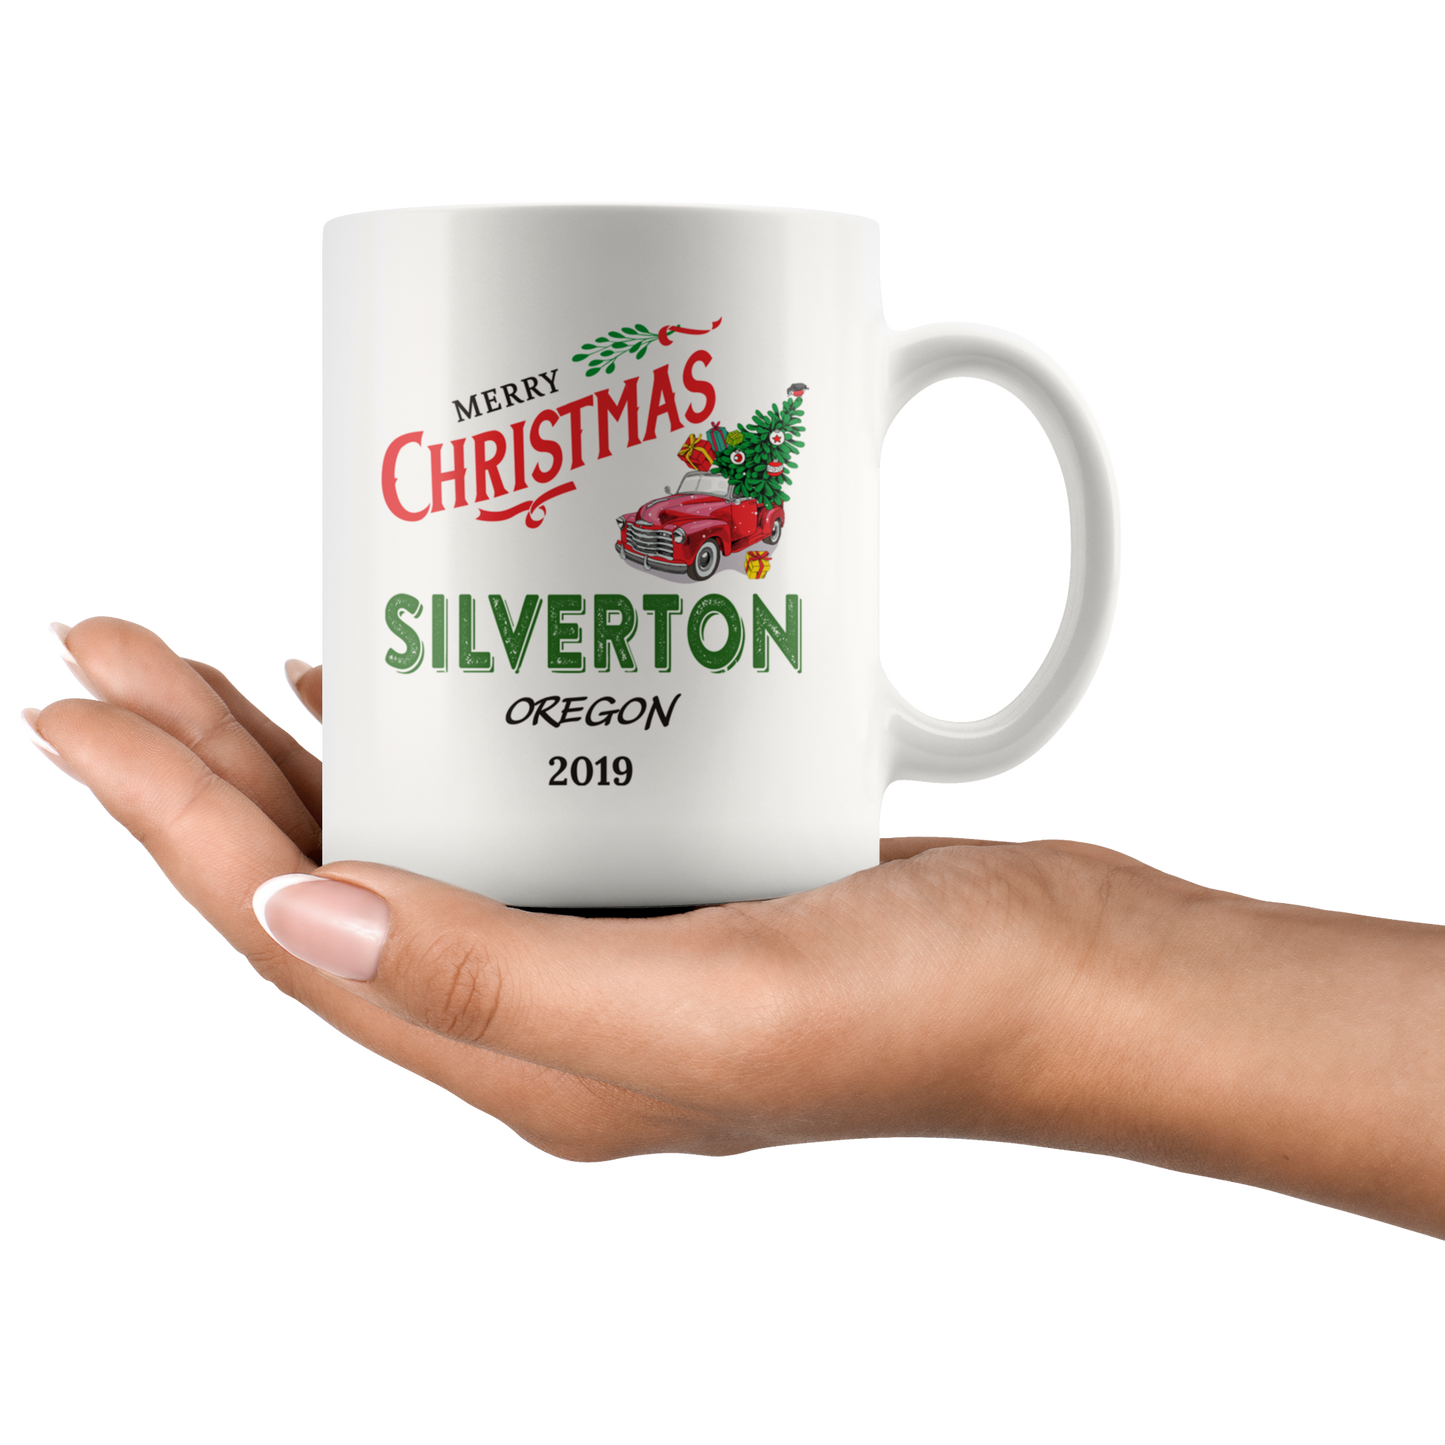 ND20747151-sp-16984 - Tis The Season Christmas Mug - Christmas Mug 2019 Silverton